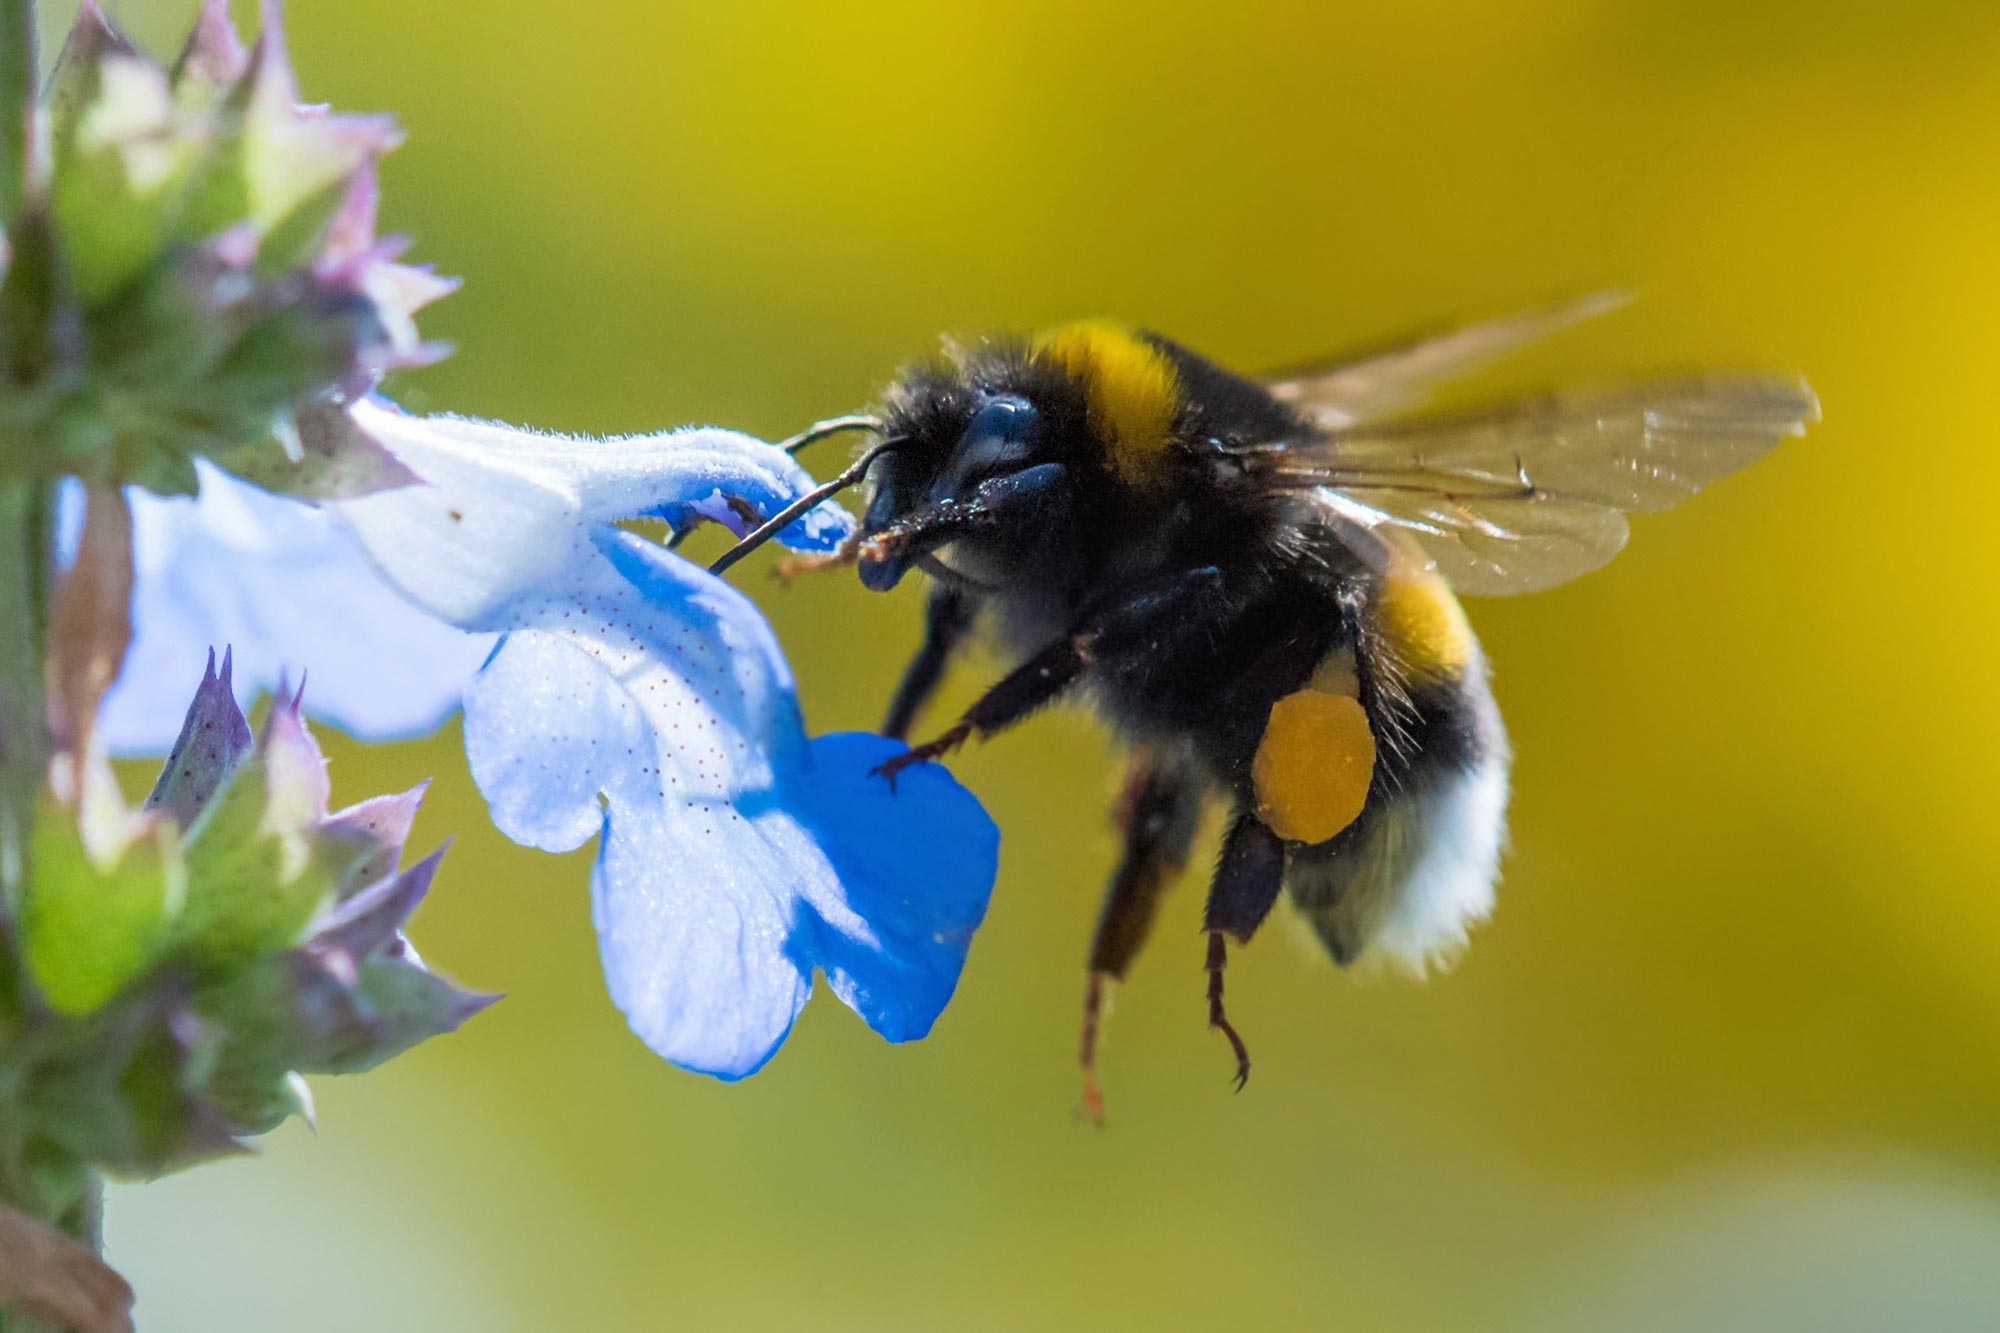 Eksperimen luar biasa yang menunjukkan lebah “bermain” dengan berbagai hal